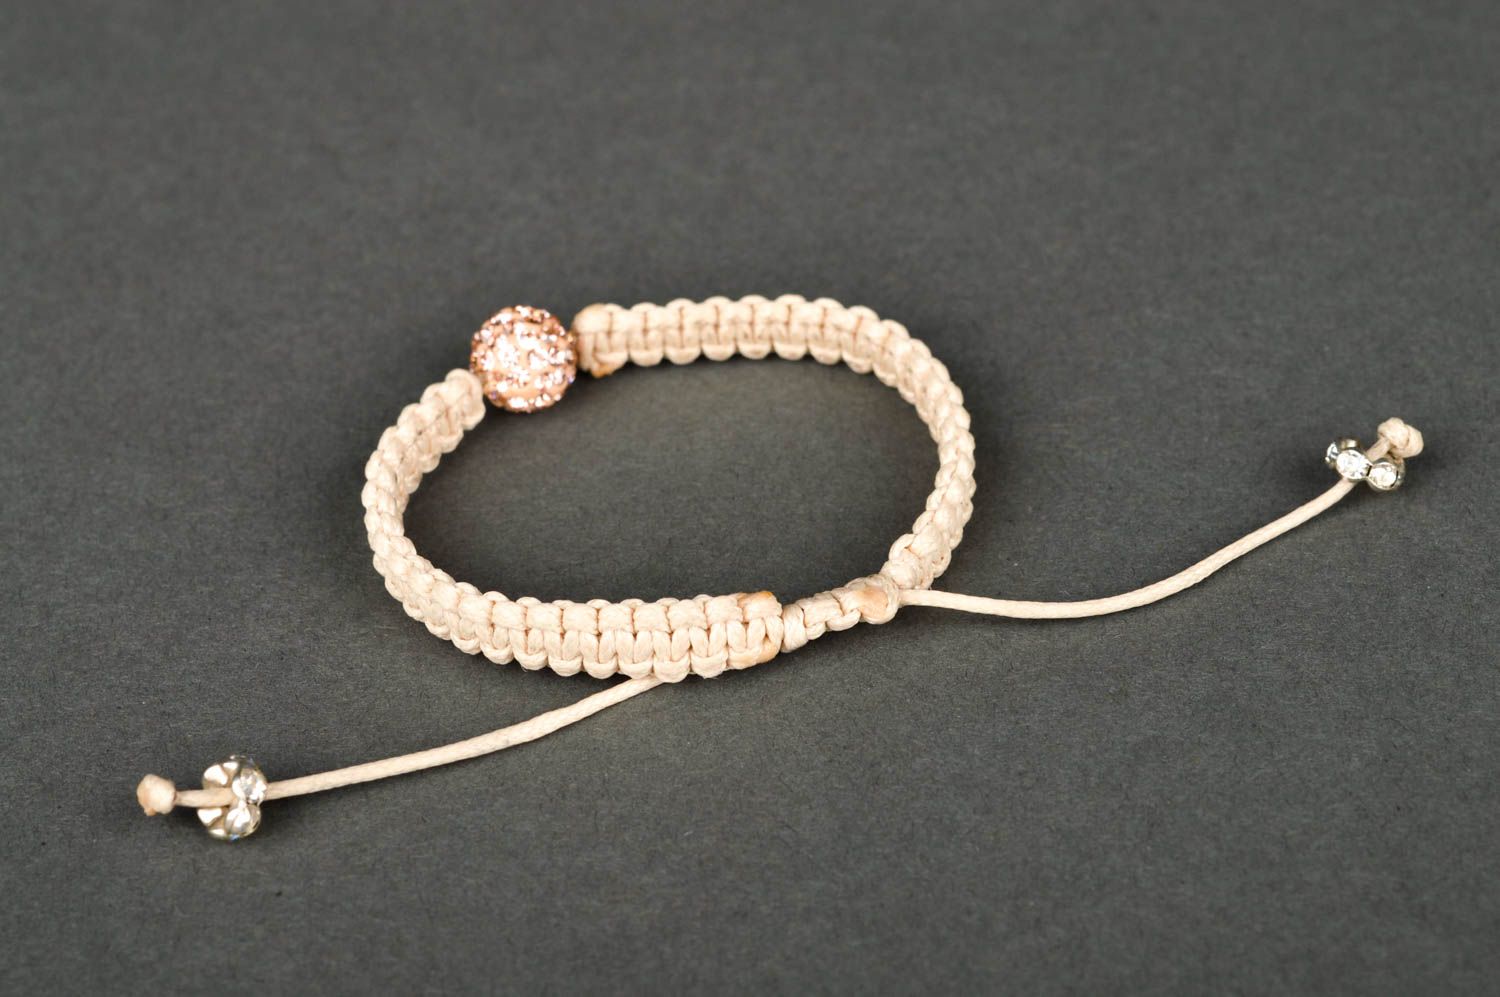 Wrist bracelet handmade string bracelet friendship bracelet gifts for women photo 5